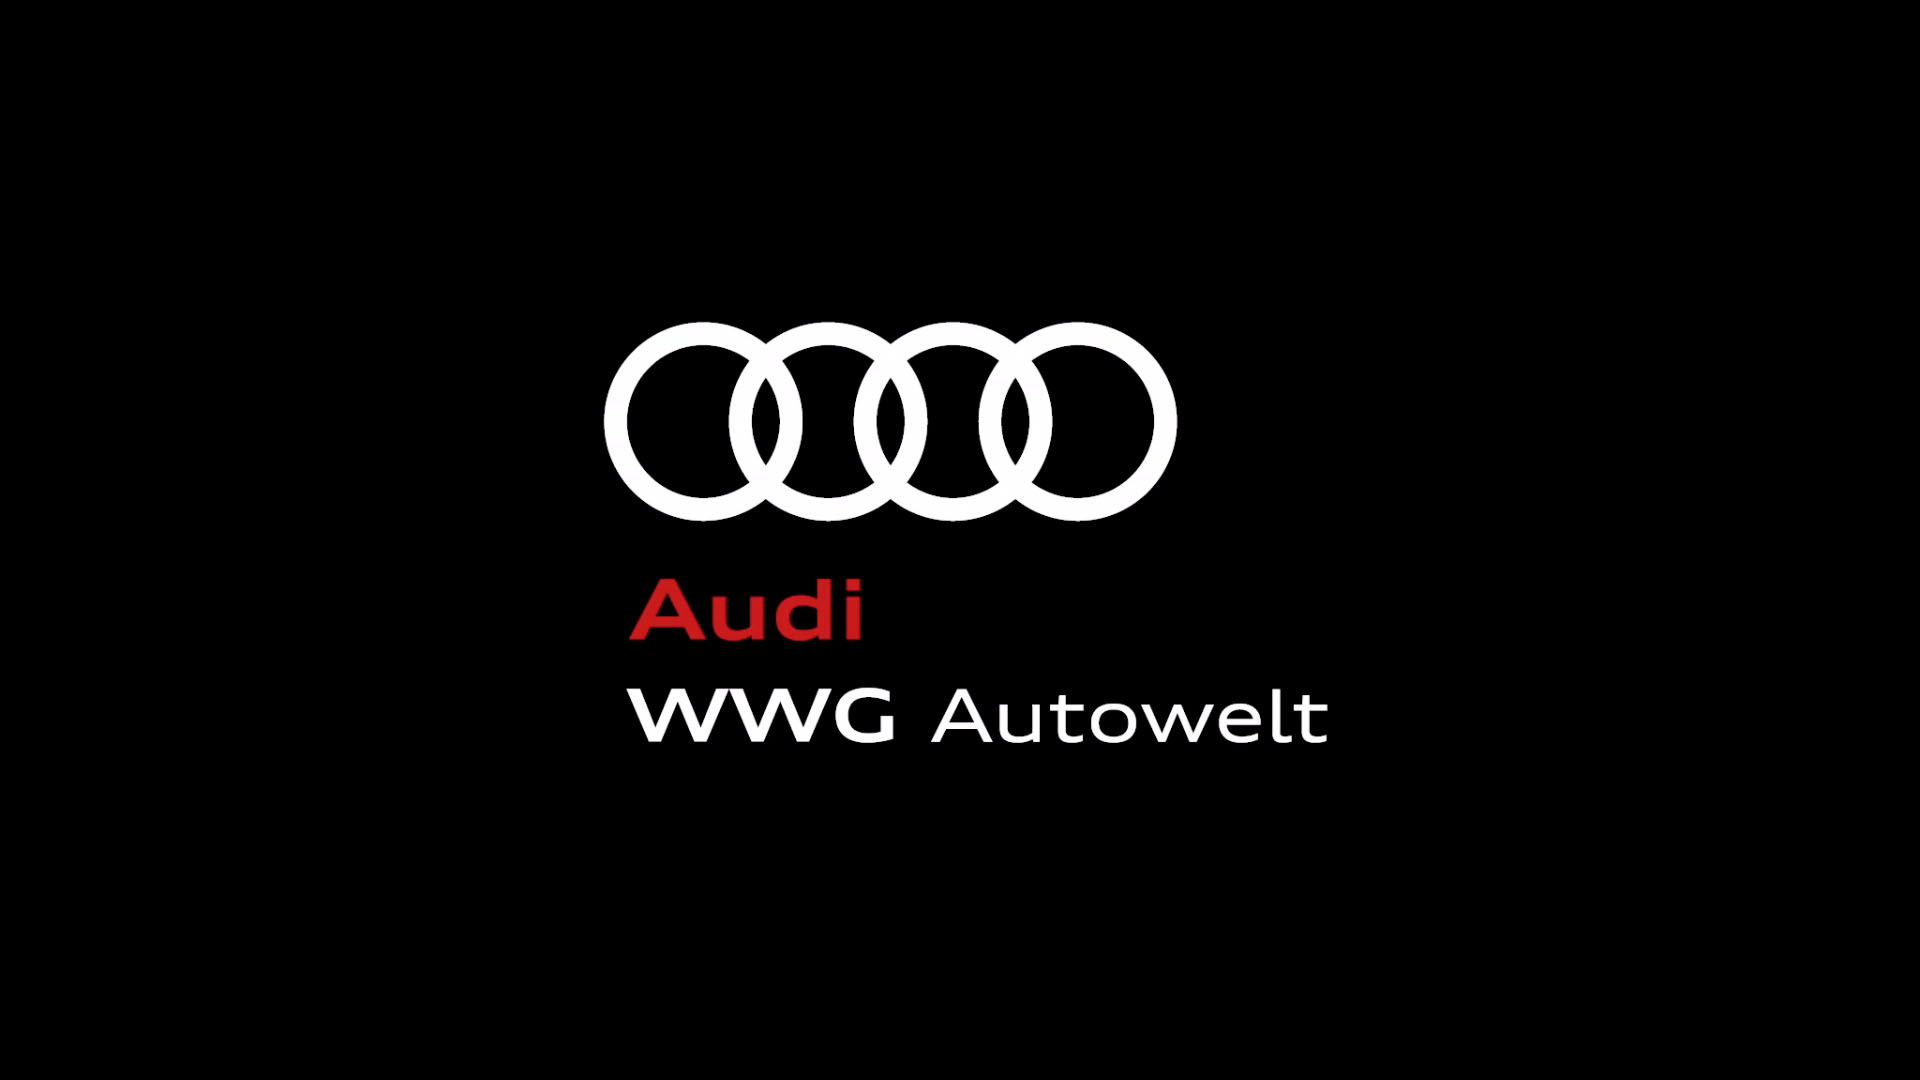 WWG Autowelt - Hohoho